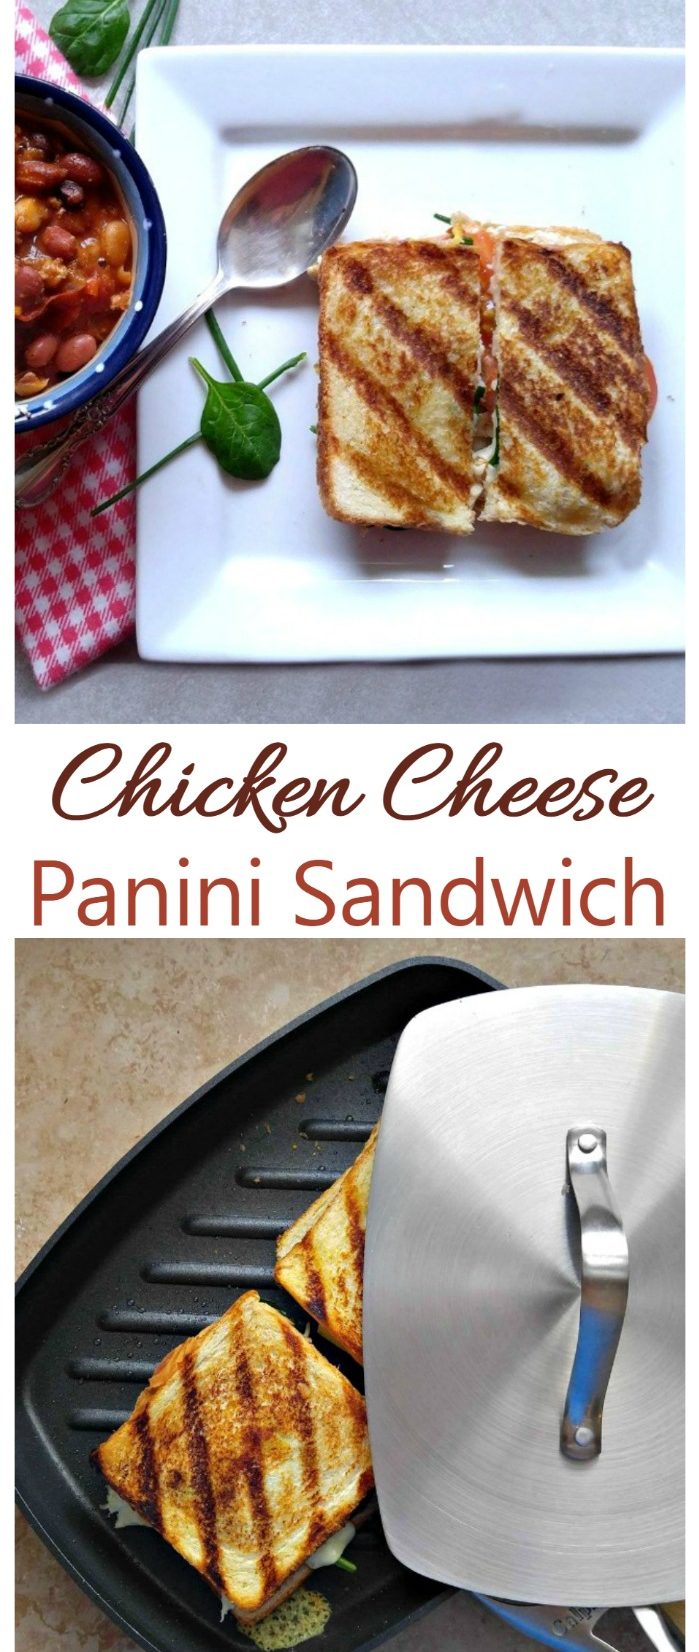 ကြက်သားဒိန်ခဲ Panini Sandwich - နေ့လည်စာကို လျှော့စားပါ။